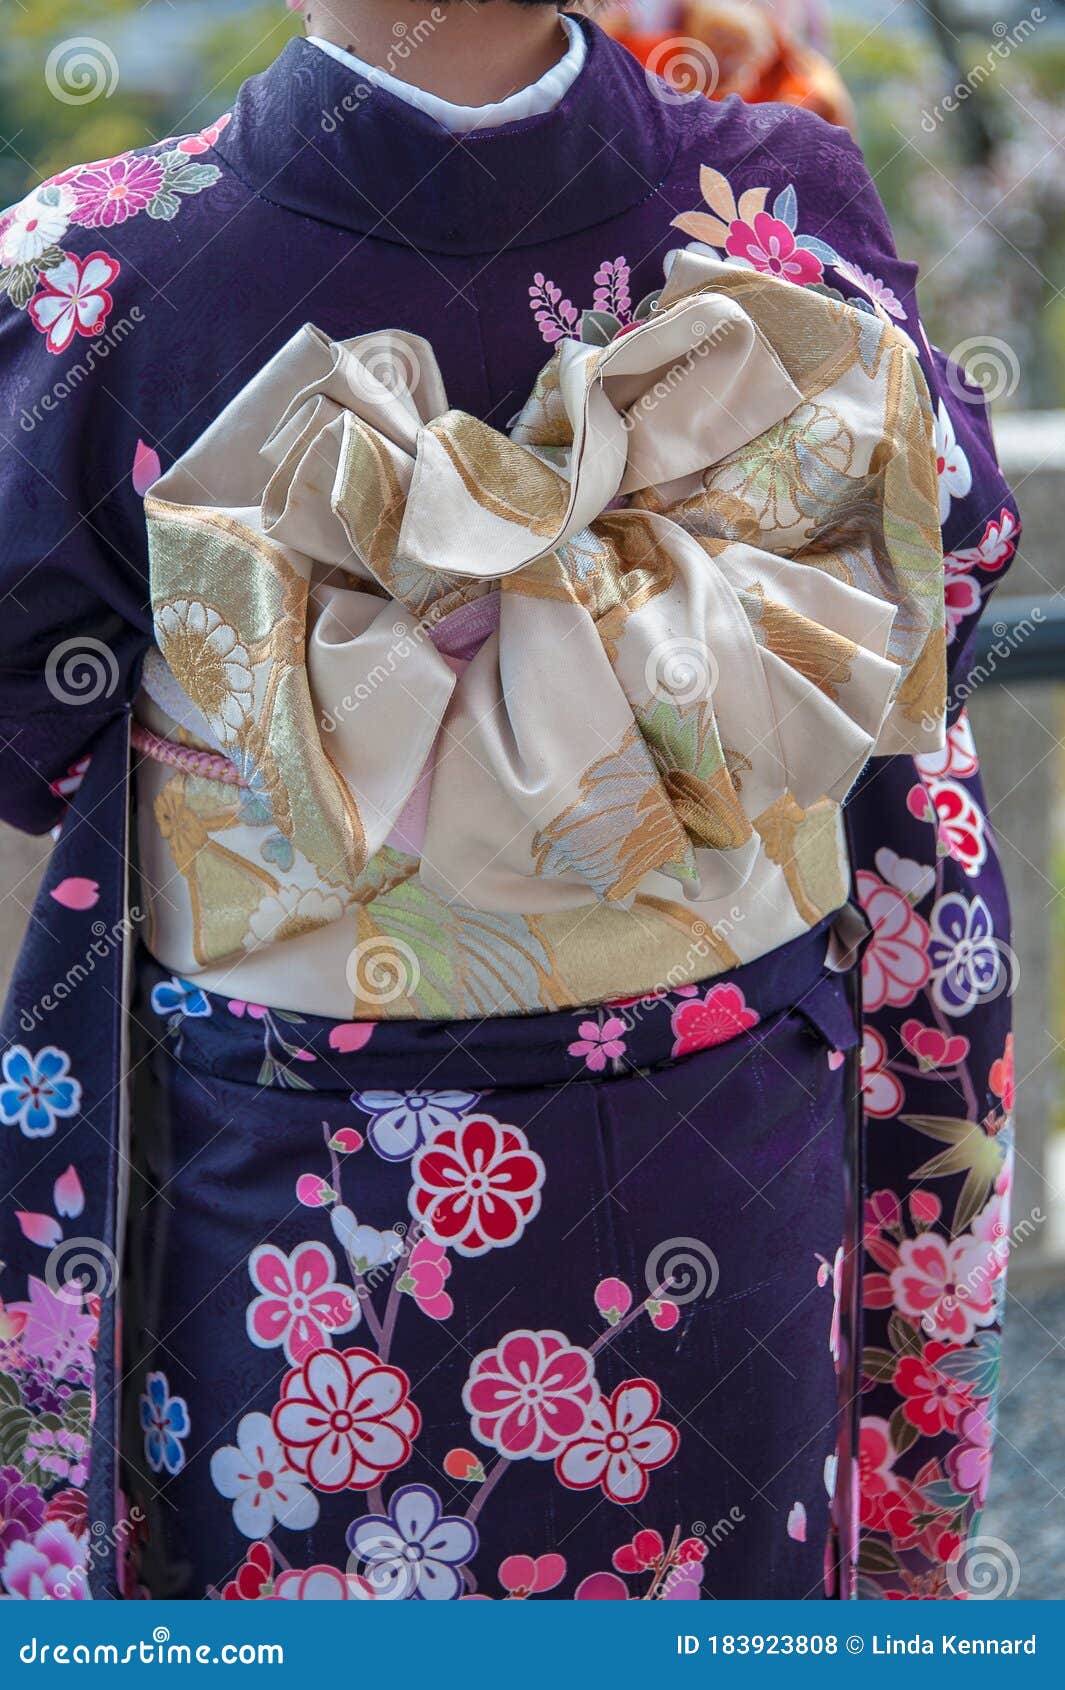 2 226 Kimono Obi Photos Free Royalty Free Stock Photos From Dreamstime